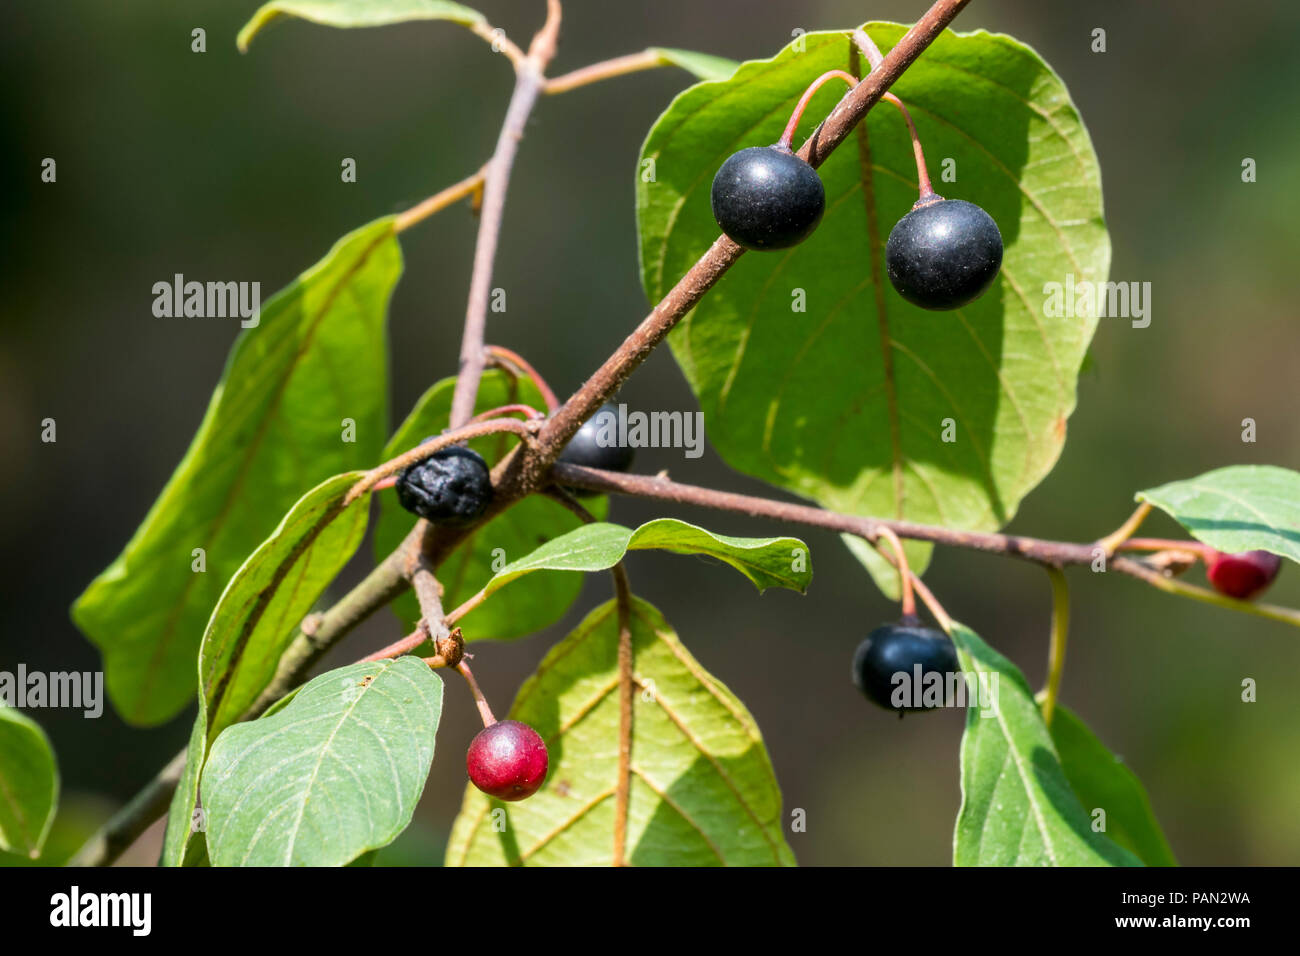 Wild black cherry / rum cherry / mountain black cherry (Prunus serotina) close-up of leaves and ripe and unripe berries in summer Stock Photo